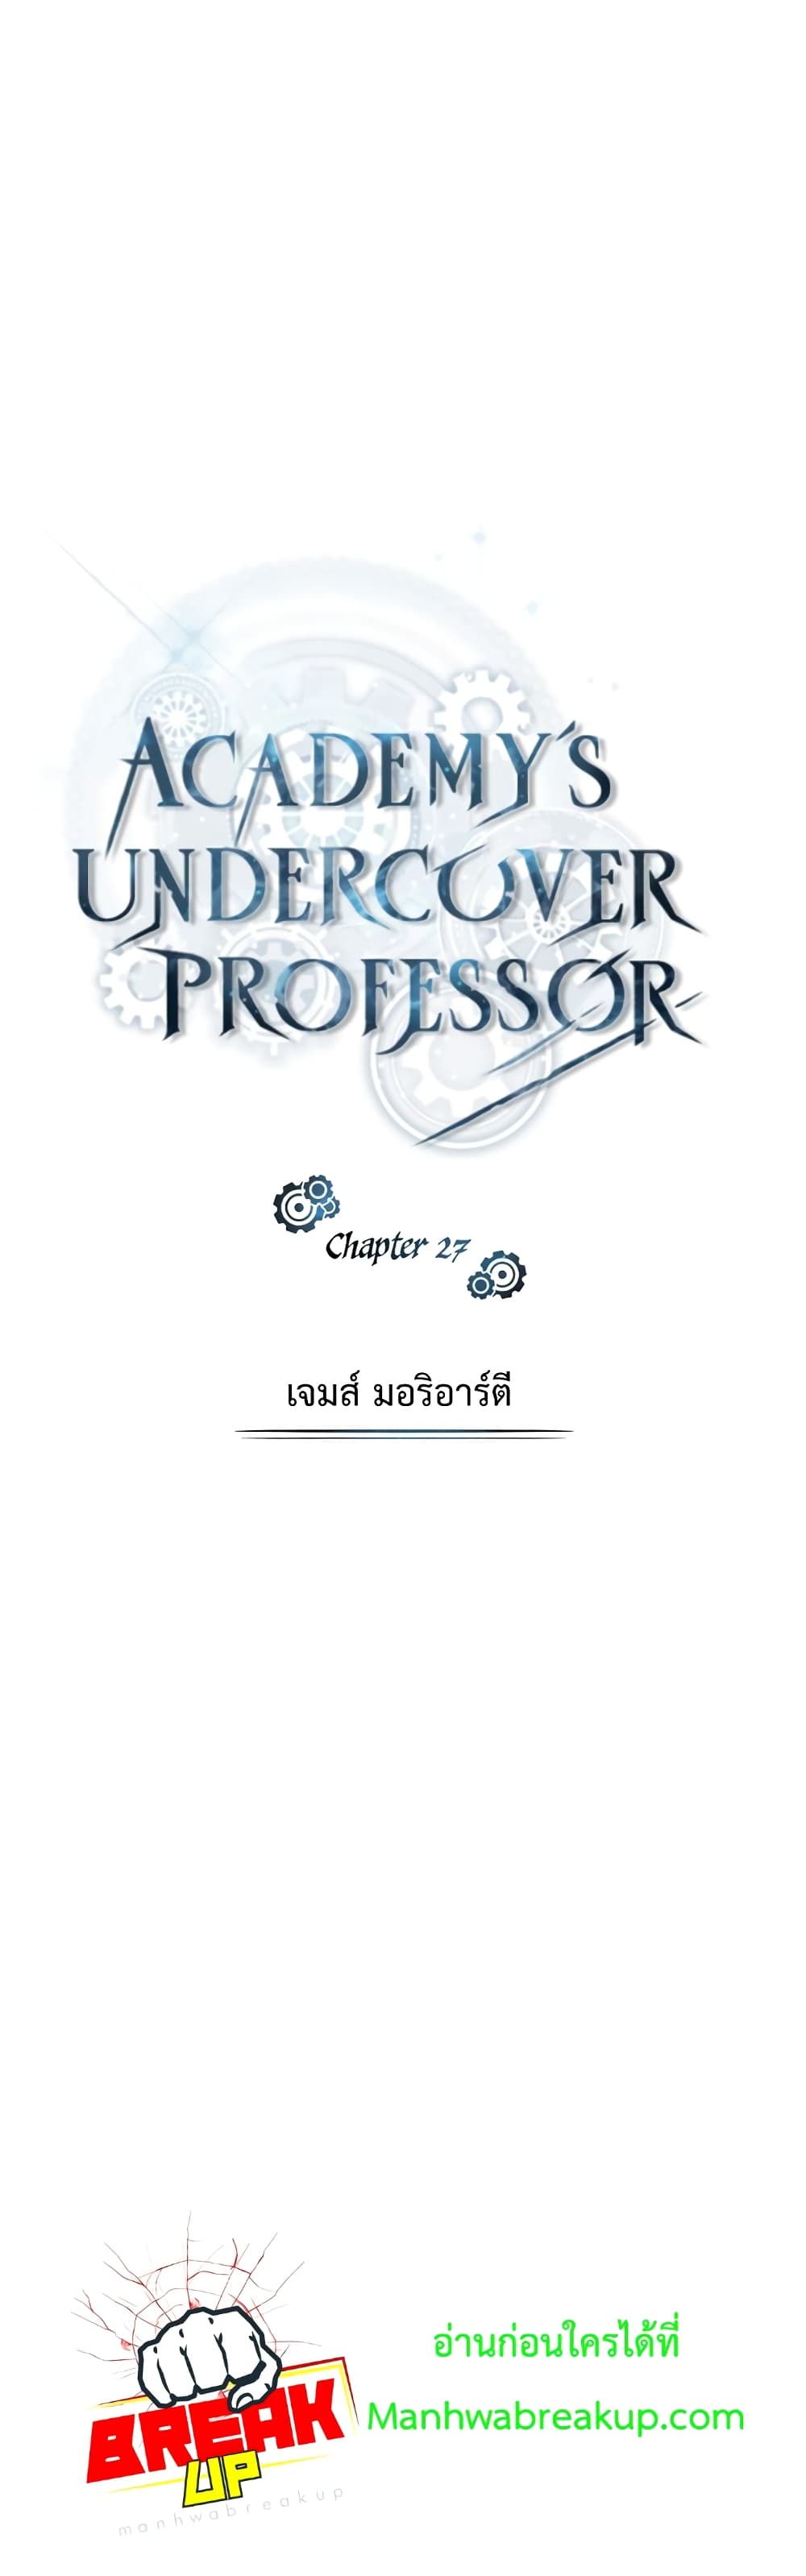 Academy’s Undercover Professor 27-27